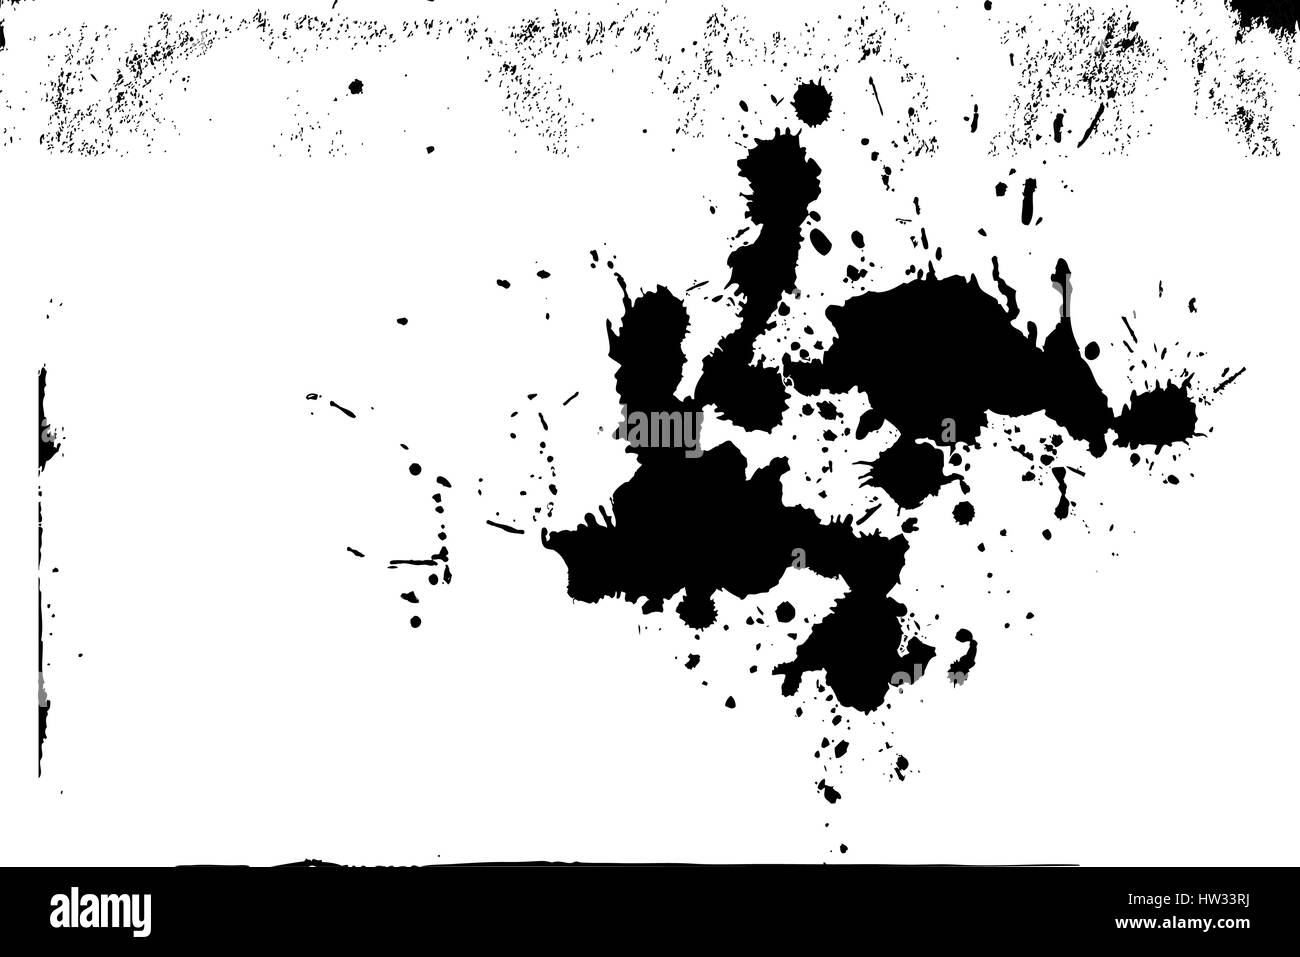 Grunge background texture isolées, la peinture splash noir et blanc pour l'effet de superposition des ressources ou sale détail. Vecteur EPS10. Illustration de Vecteur